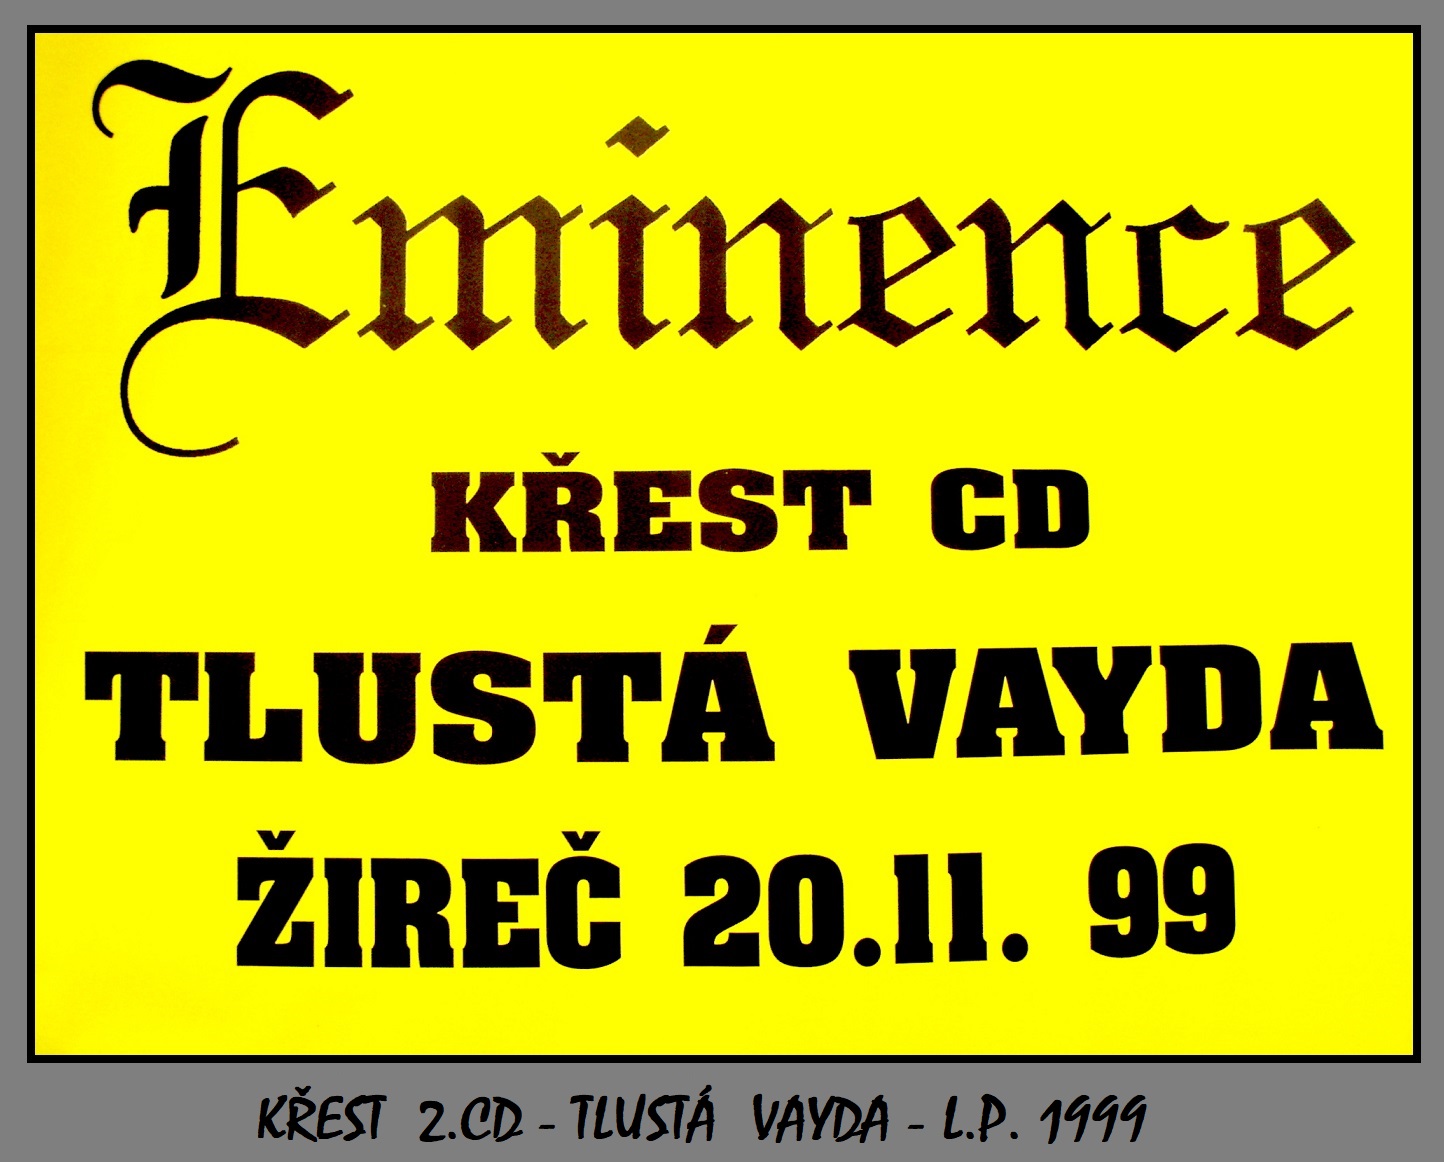 em5.1999 - EMINENCE krest 2. CD - plakat 1